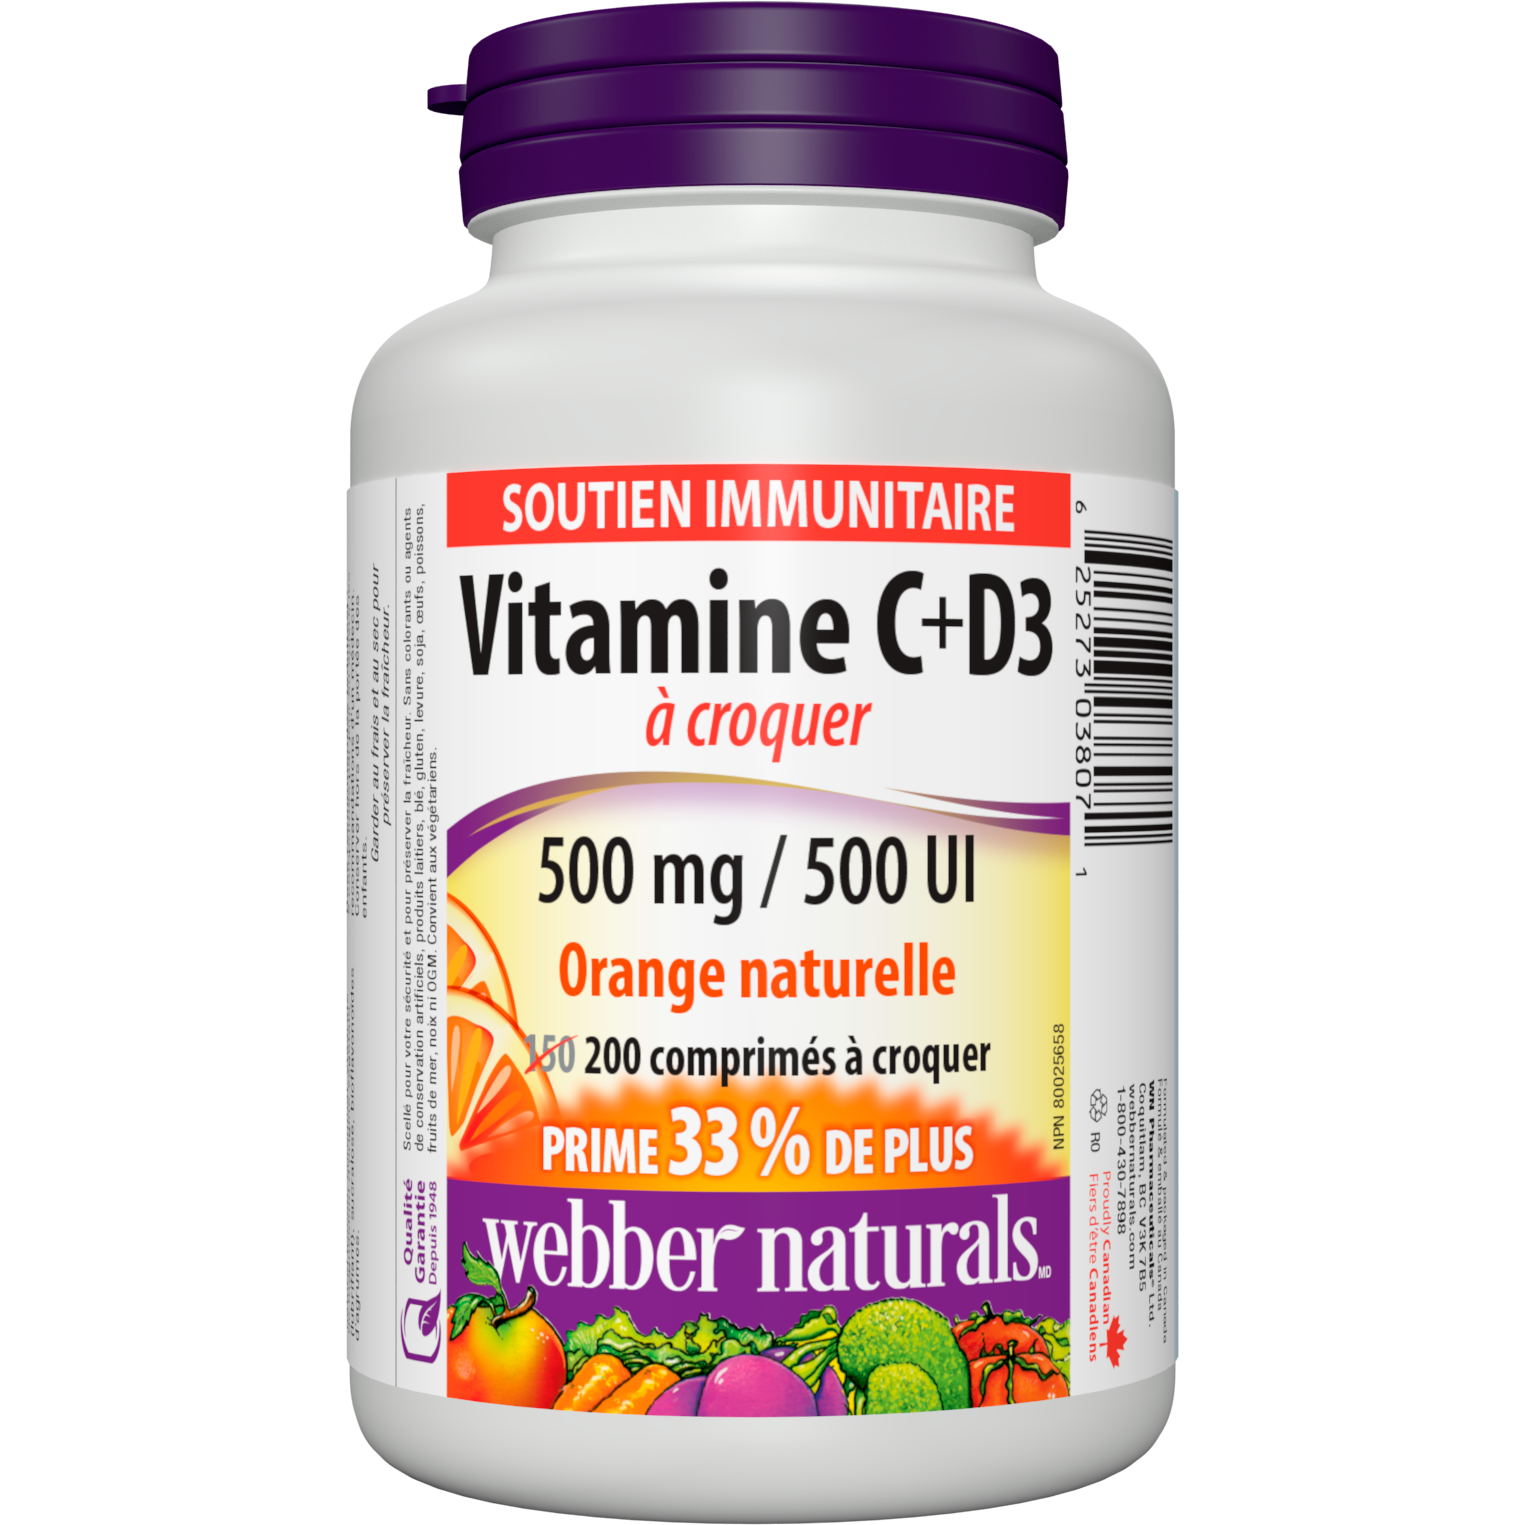 Vitamine C+D3 500 mg / 500 UI Orange naturelle for Webber Naturals|v|hi-res|WN3807